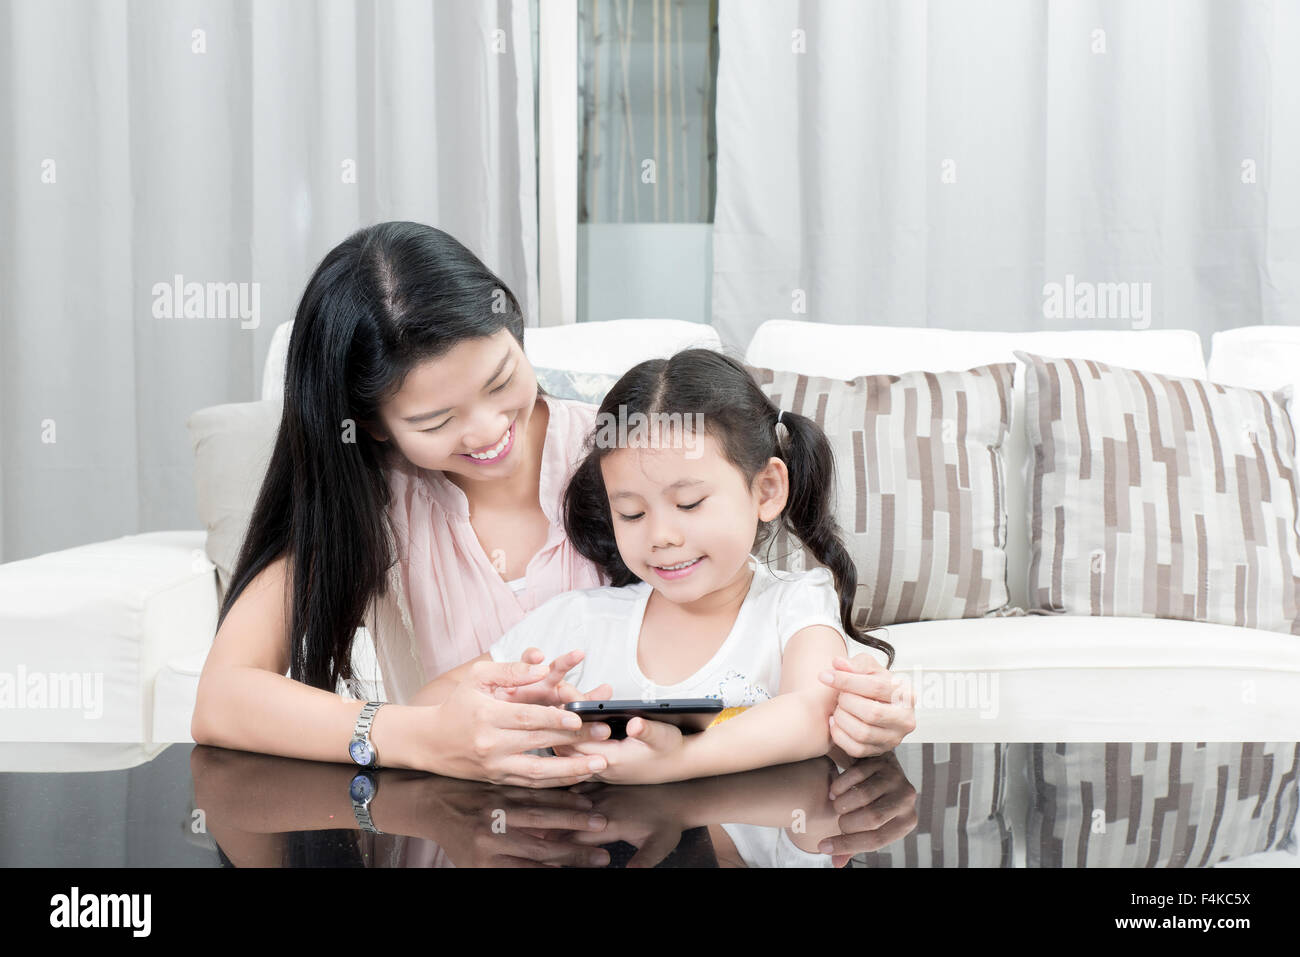 Familie, Kinder und glückliche Menschen Konzept - asiatische Mutter und Tochter spielen mit digitalen Tablet zu Hause Stockfoto